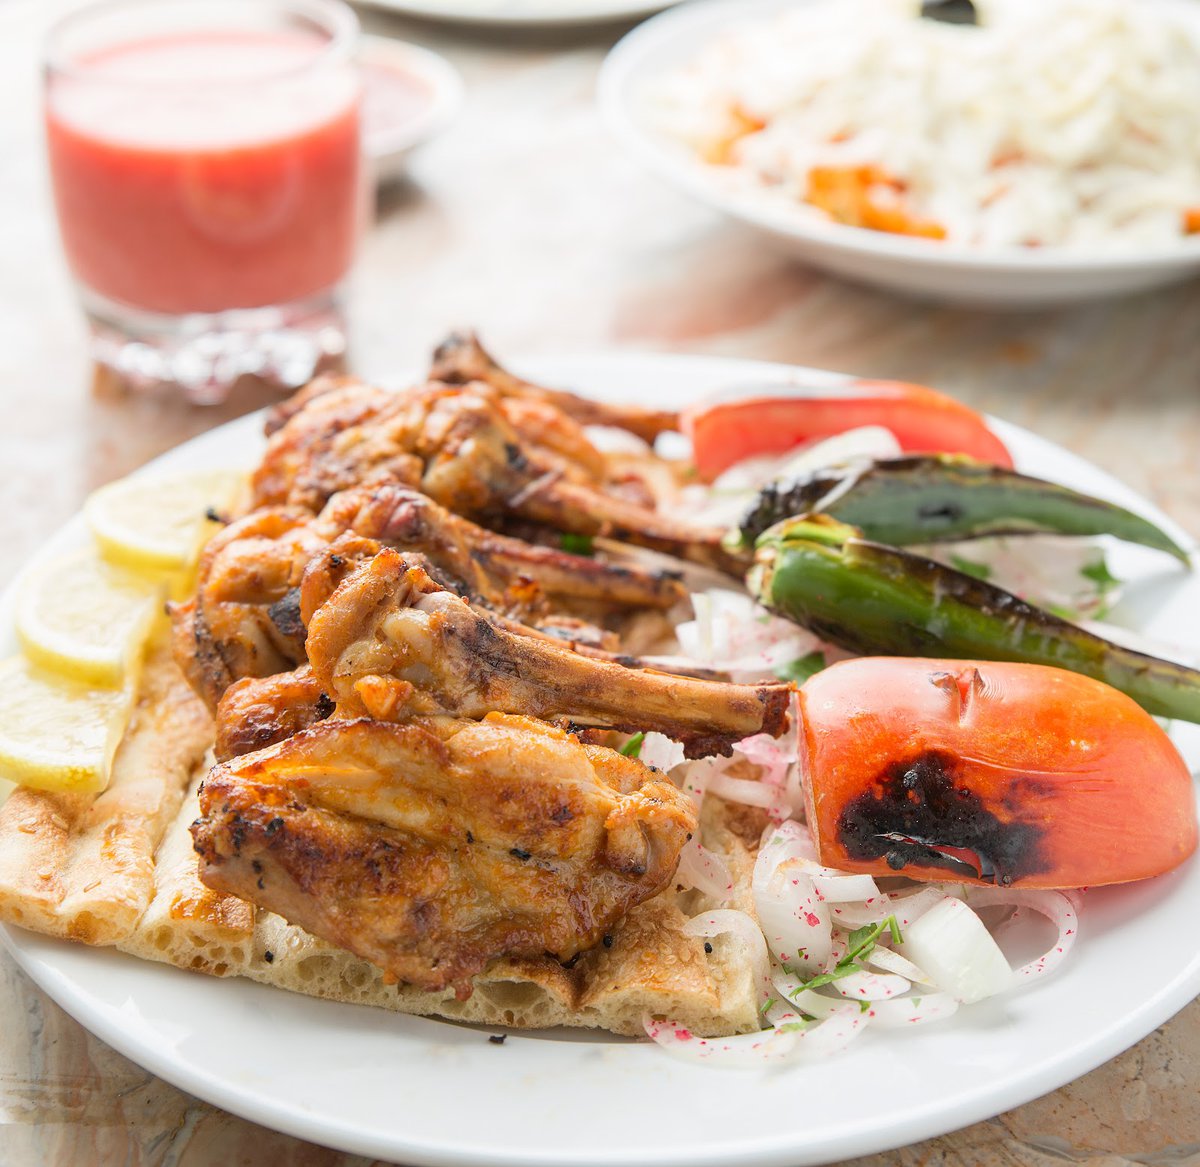 تعرف على افضل  8 مطاعم اكلات متوسطي في منطقة الرياض يمكنك زيارتها